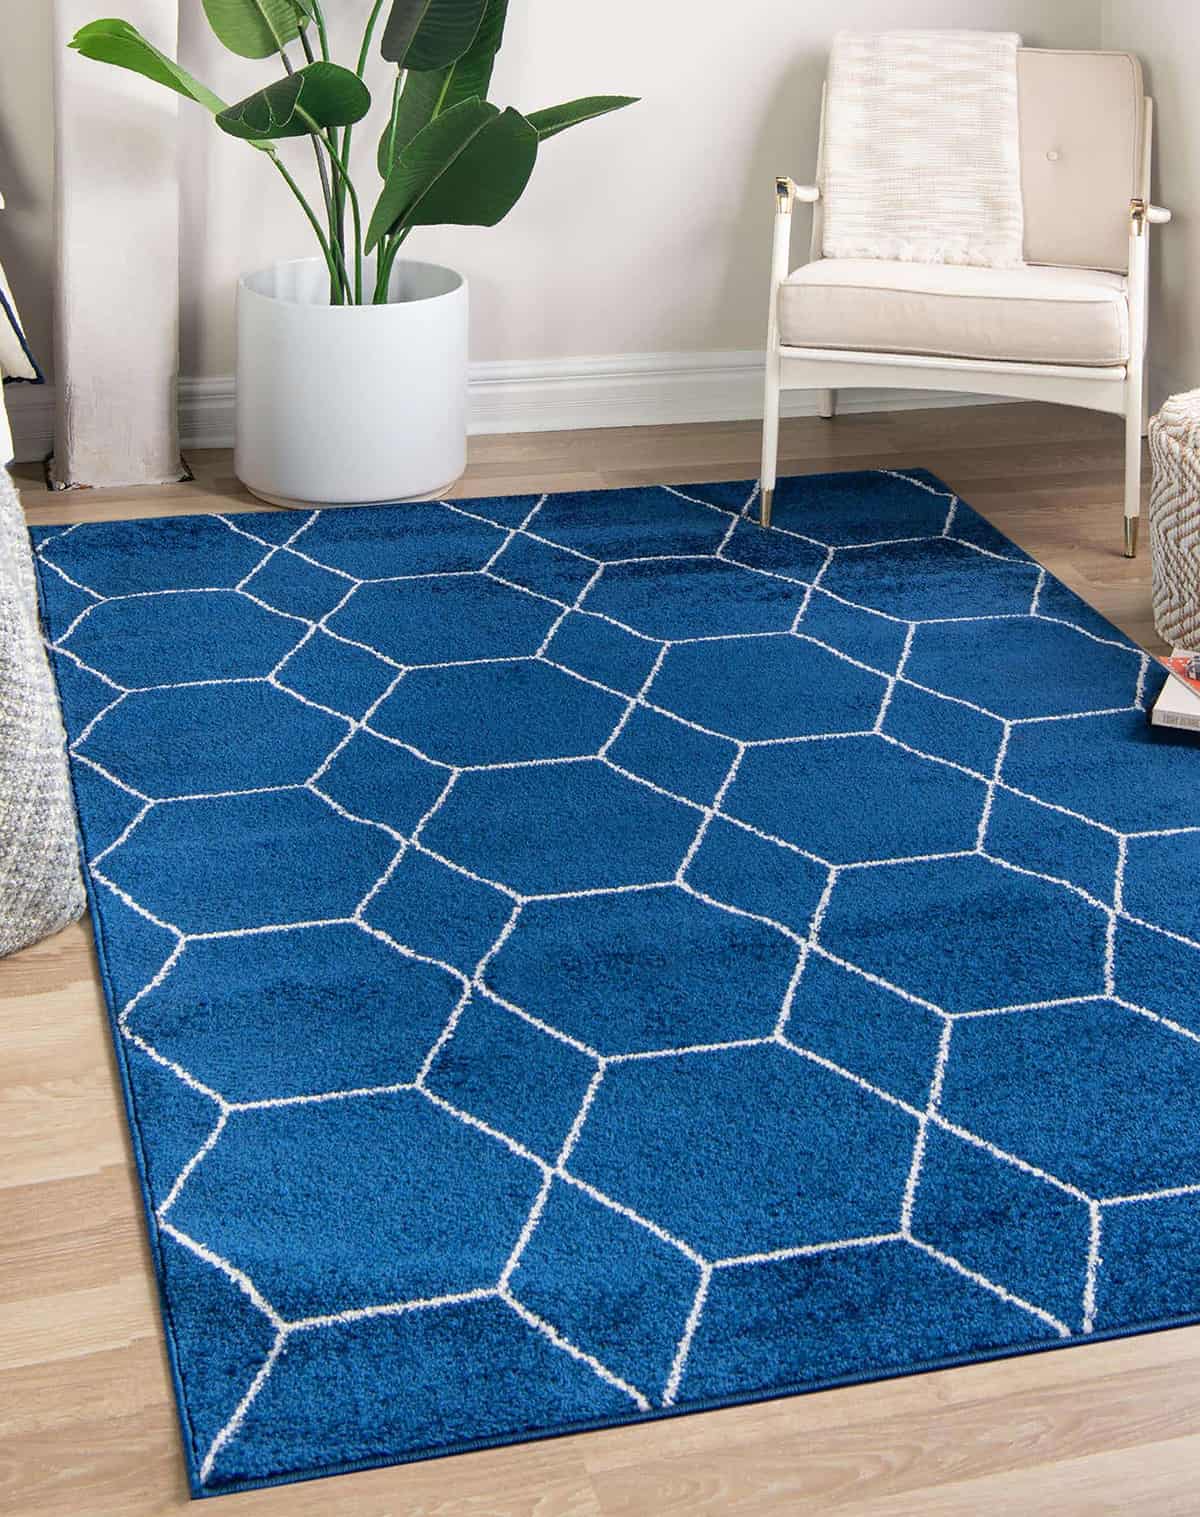 藍色地毯和輕木地板